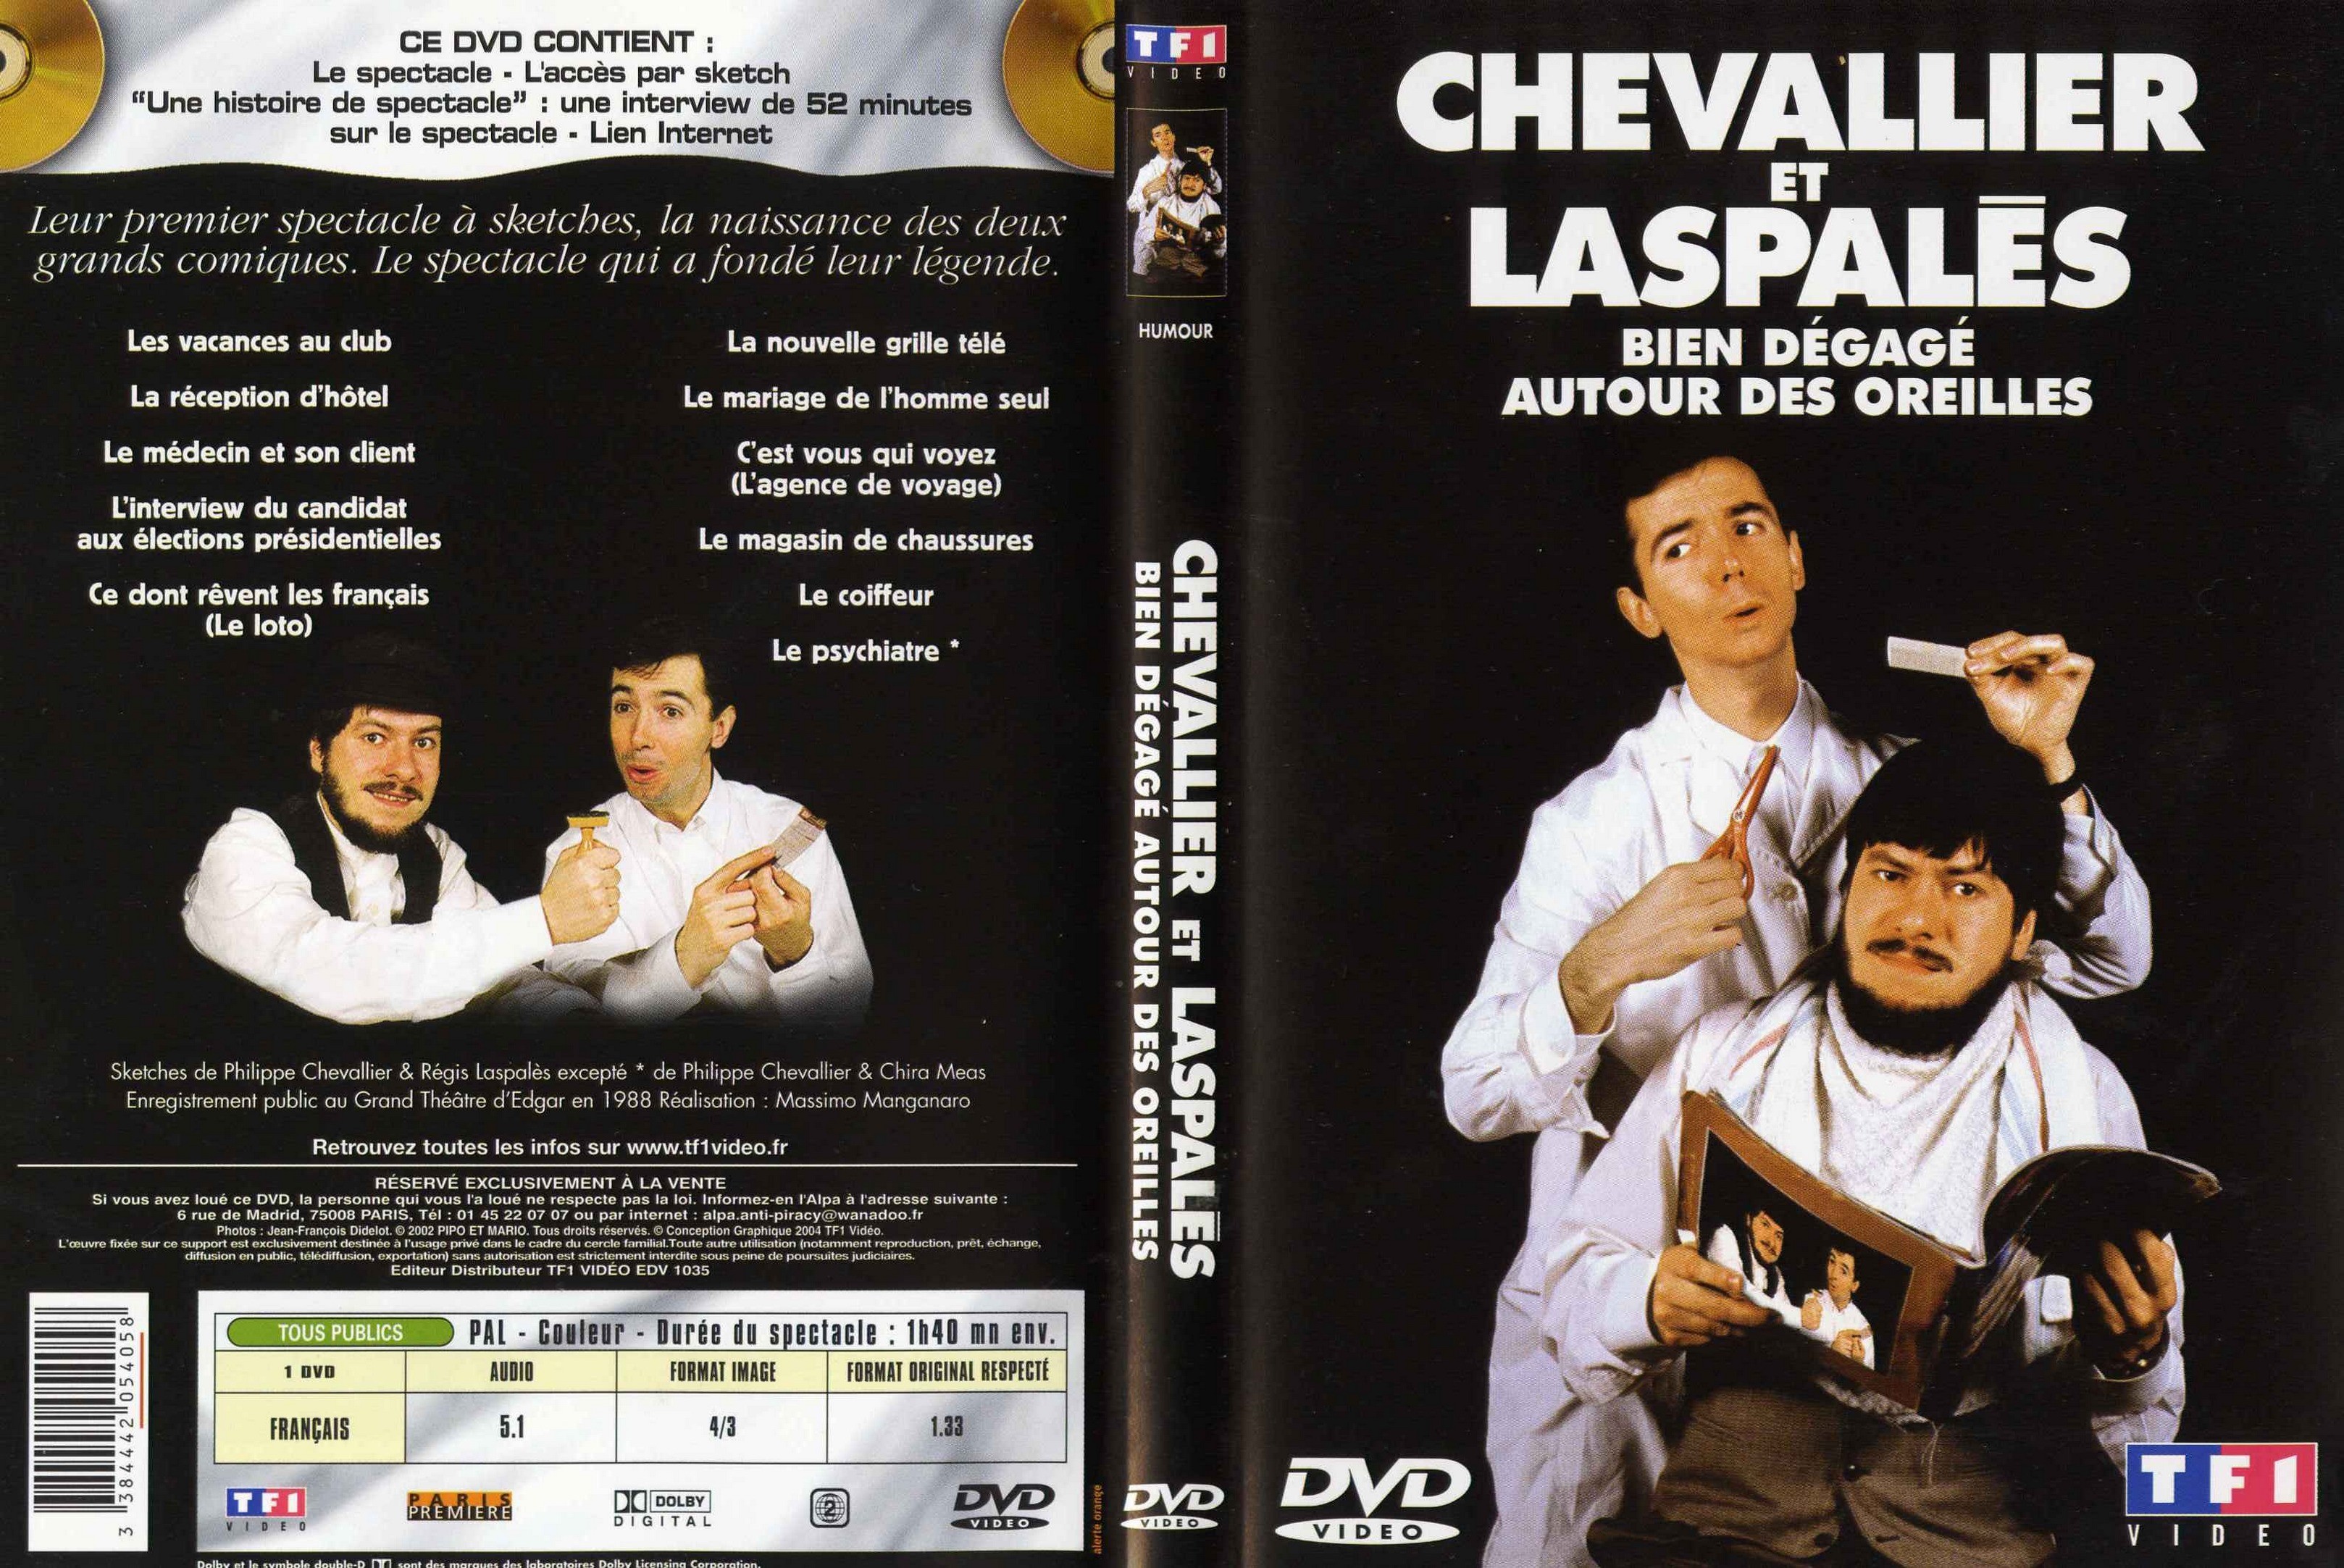 Jaquette DVD Chevalier et Laspales bien degage autour des oreilles